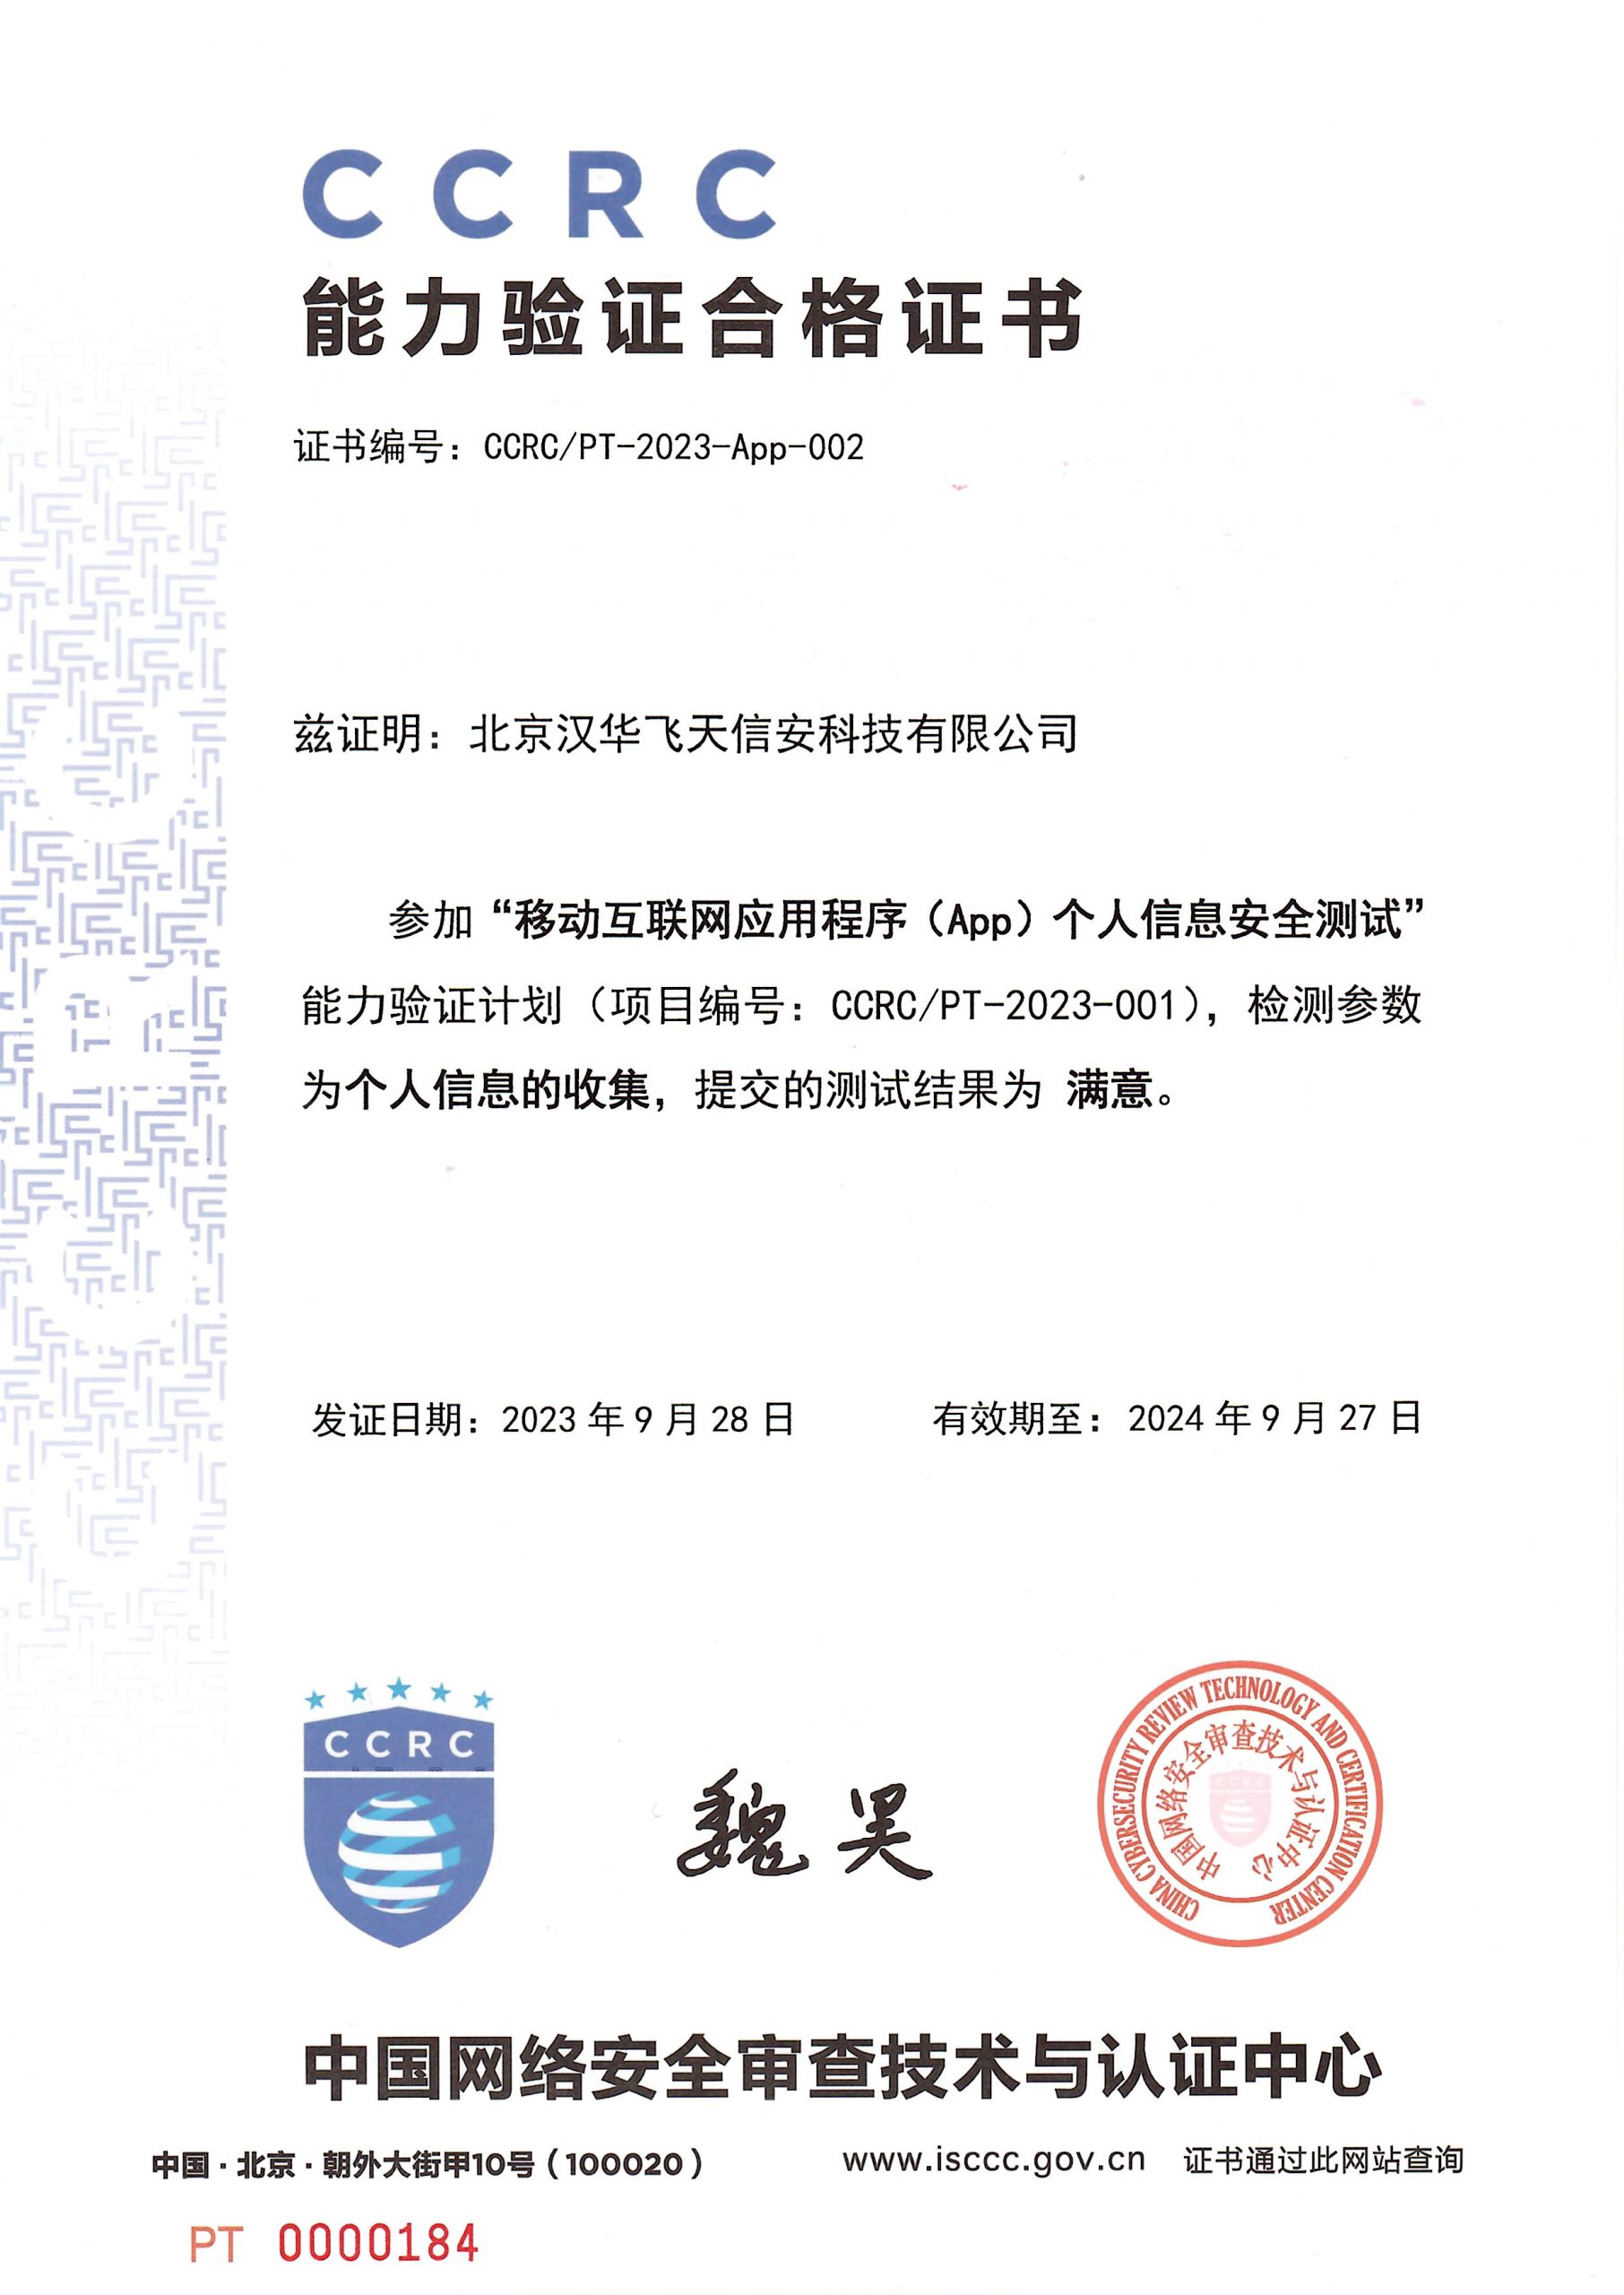 喜报连连 | 汉华信安获得CCRC能力验证合格证书